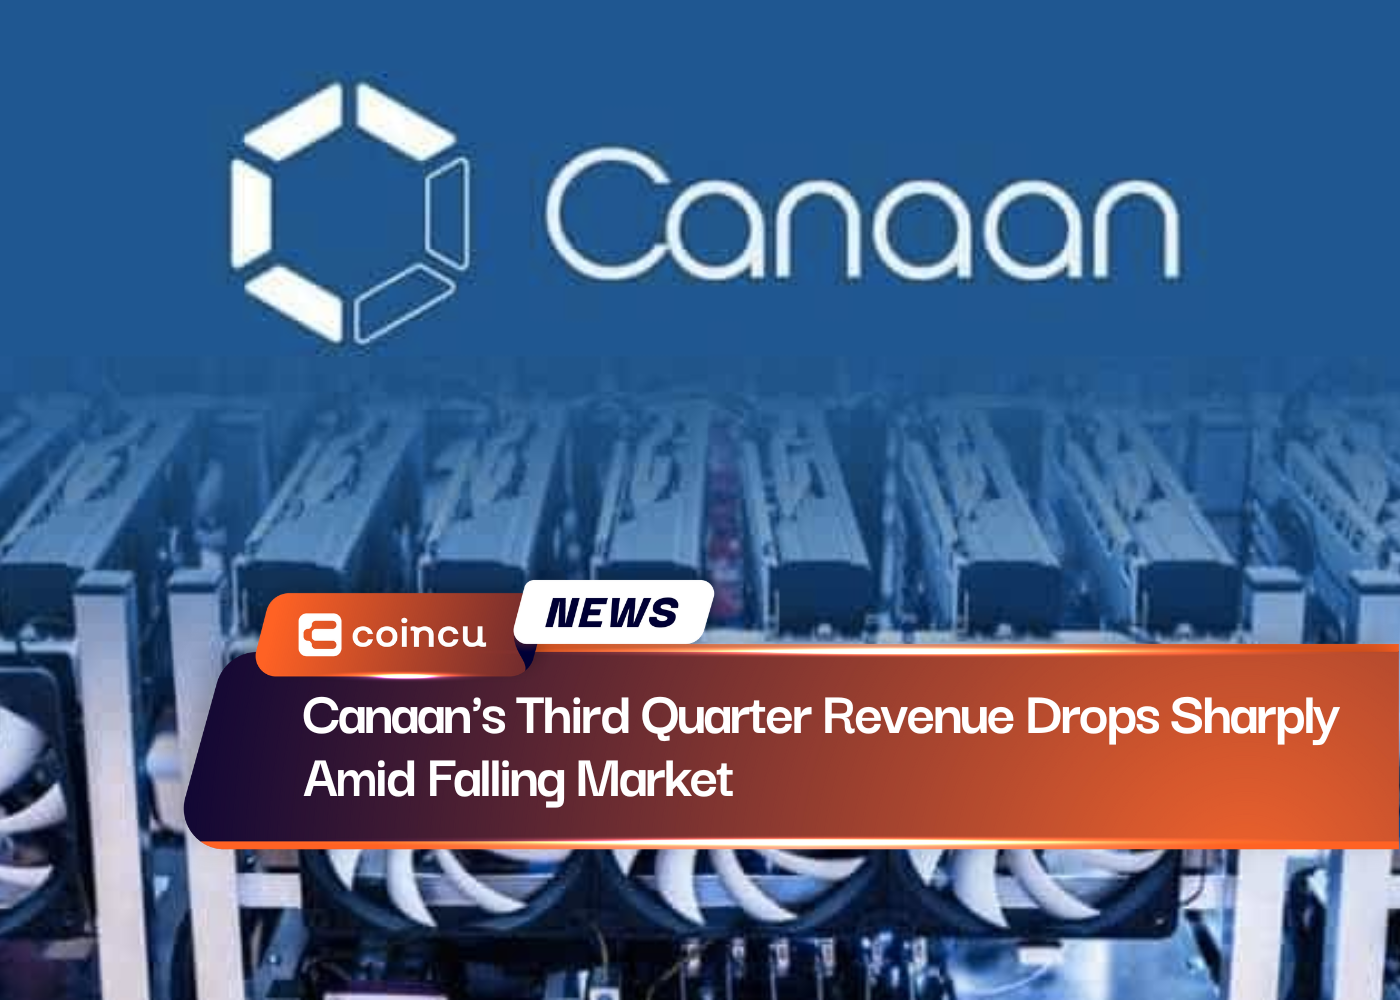 Canaan's Third Quarter Revenue Drops Sharply Amid Falling Market